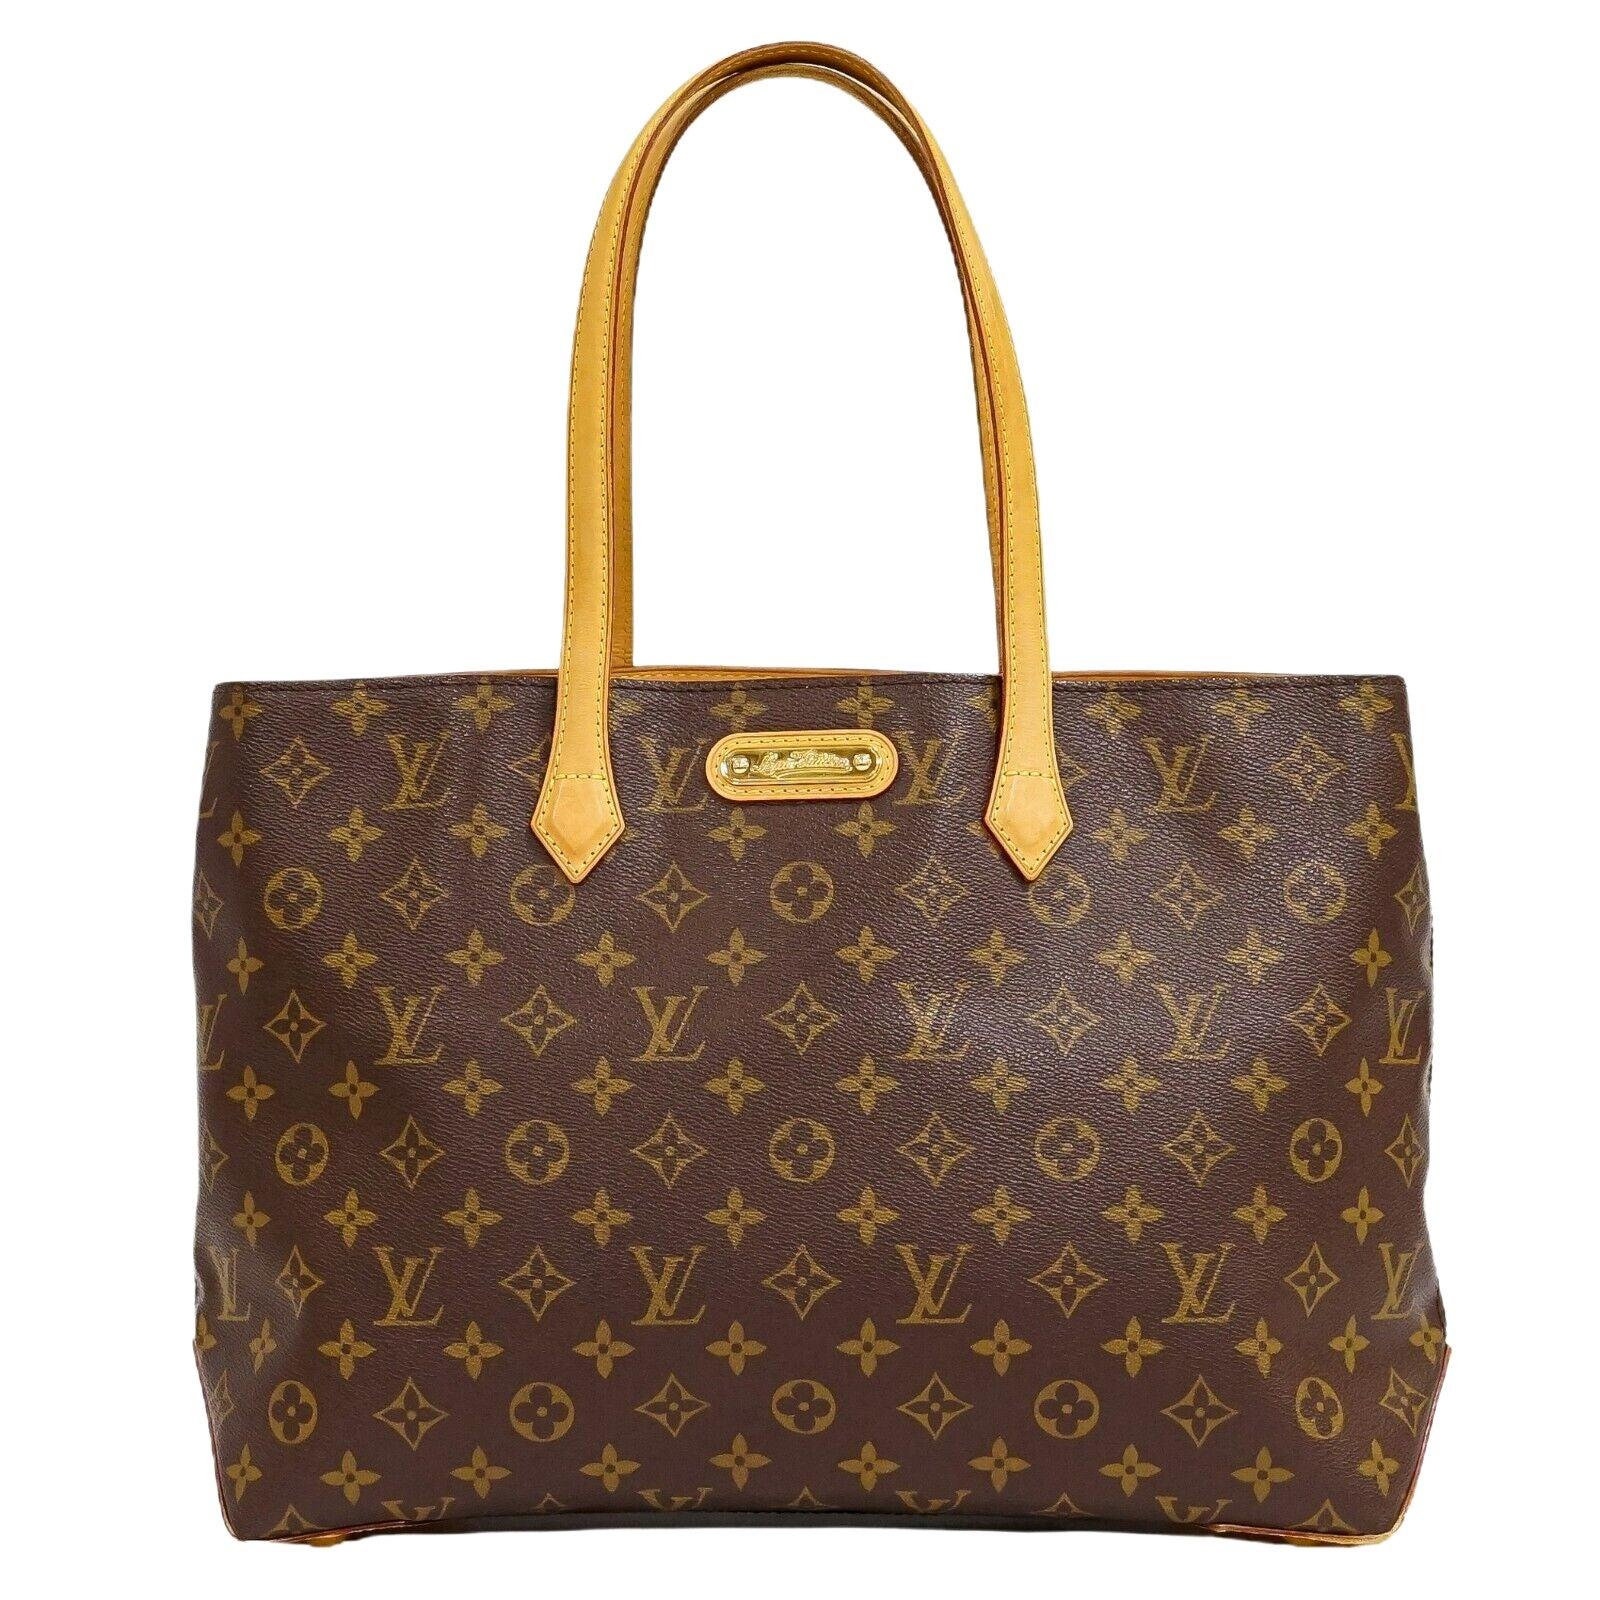 Authentic Louis Vuitton Inveneur Tote Bag, pre-owned